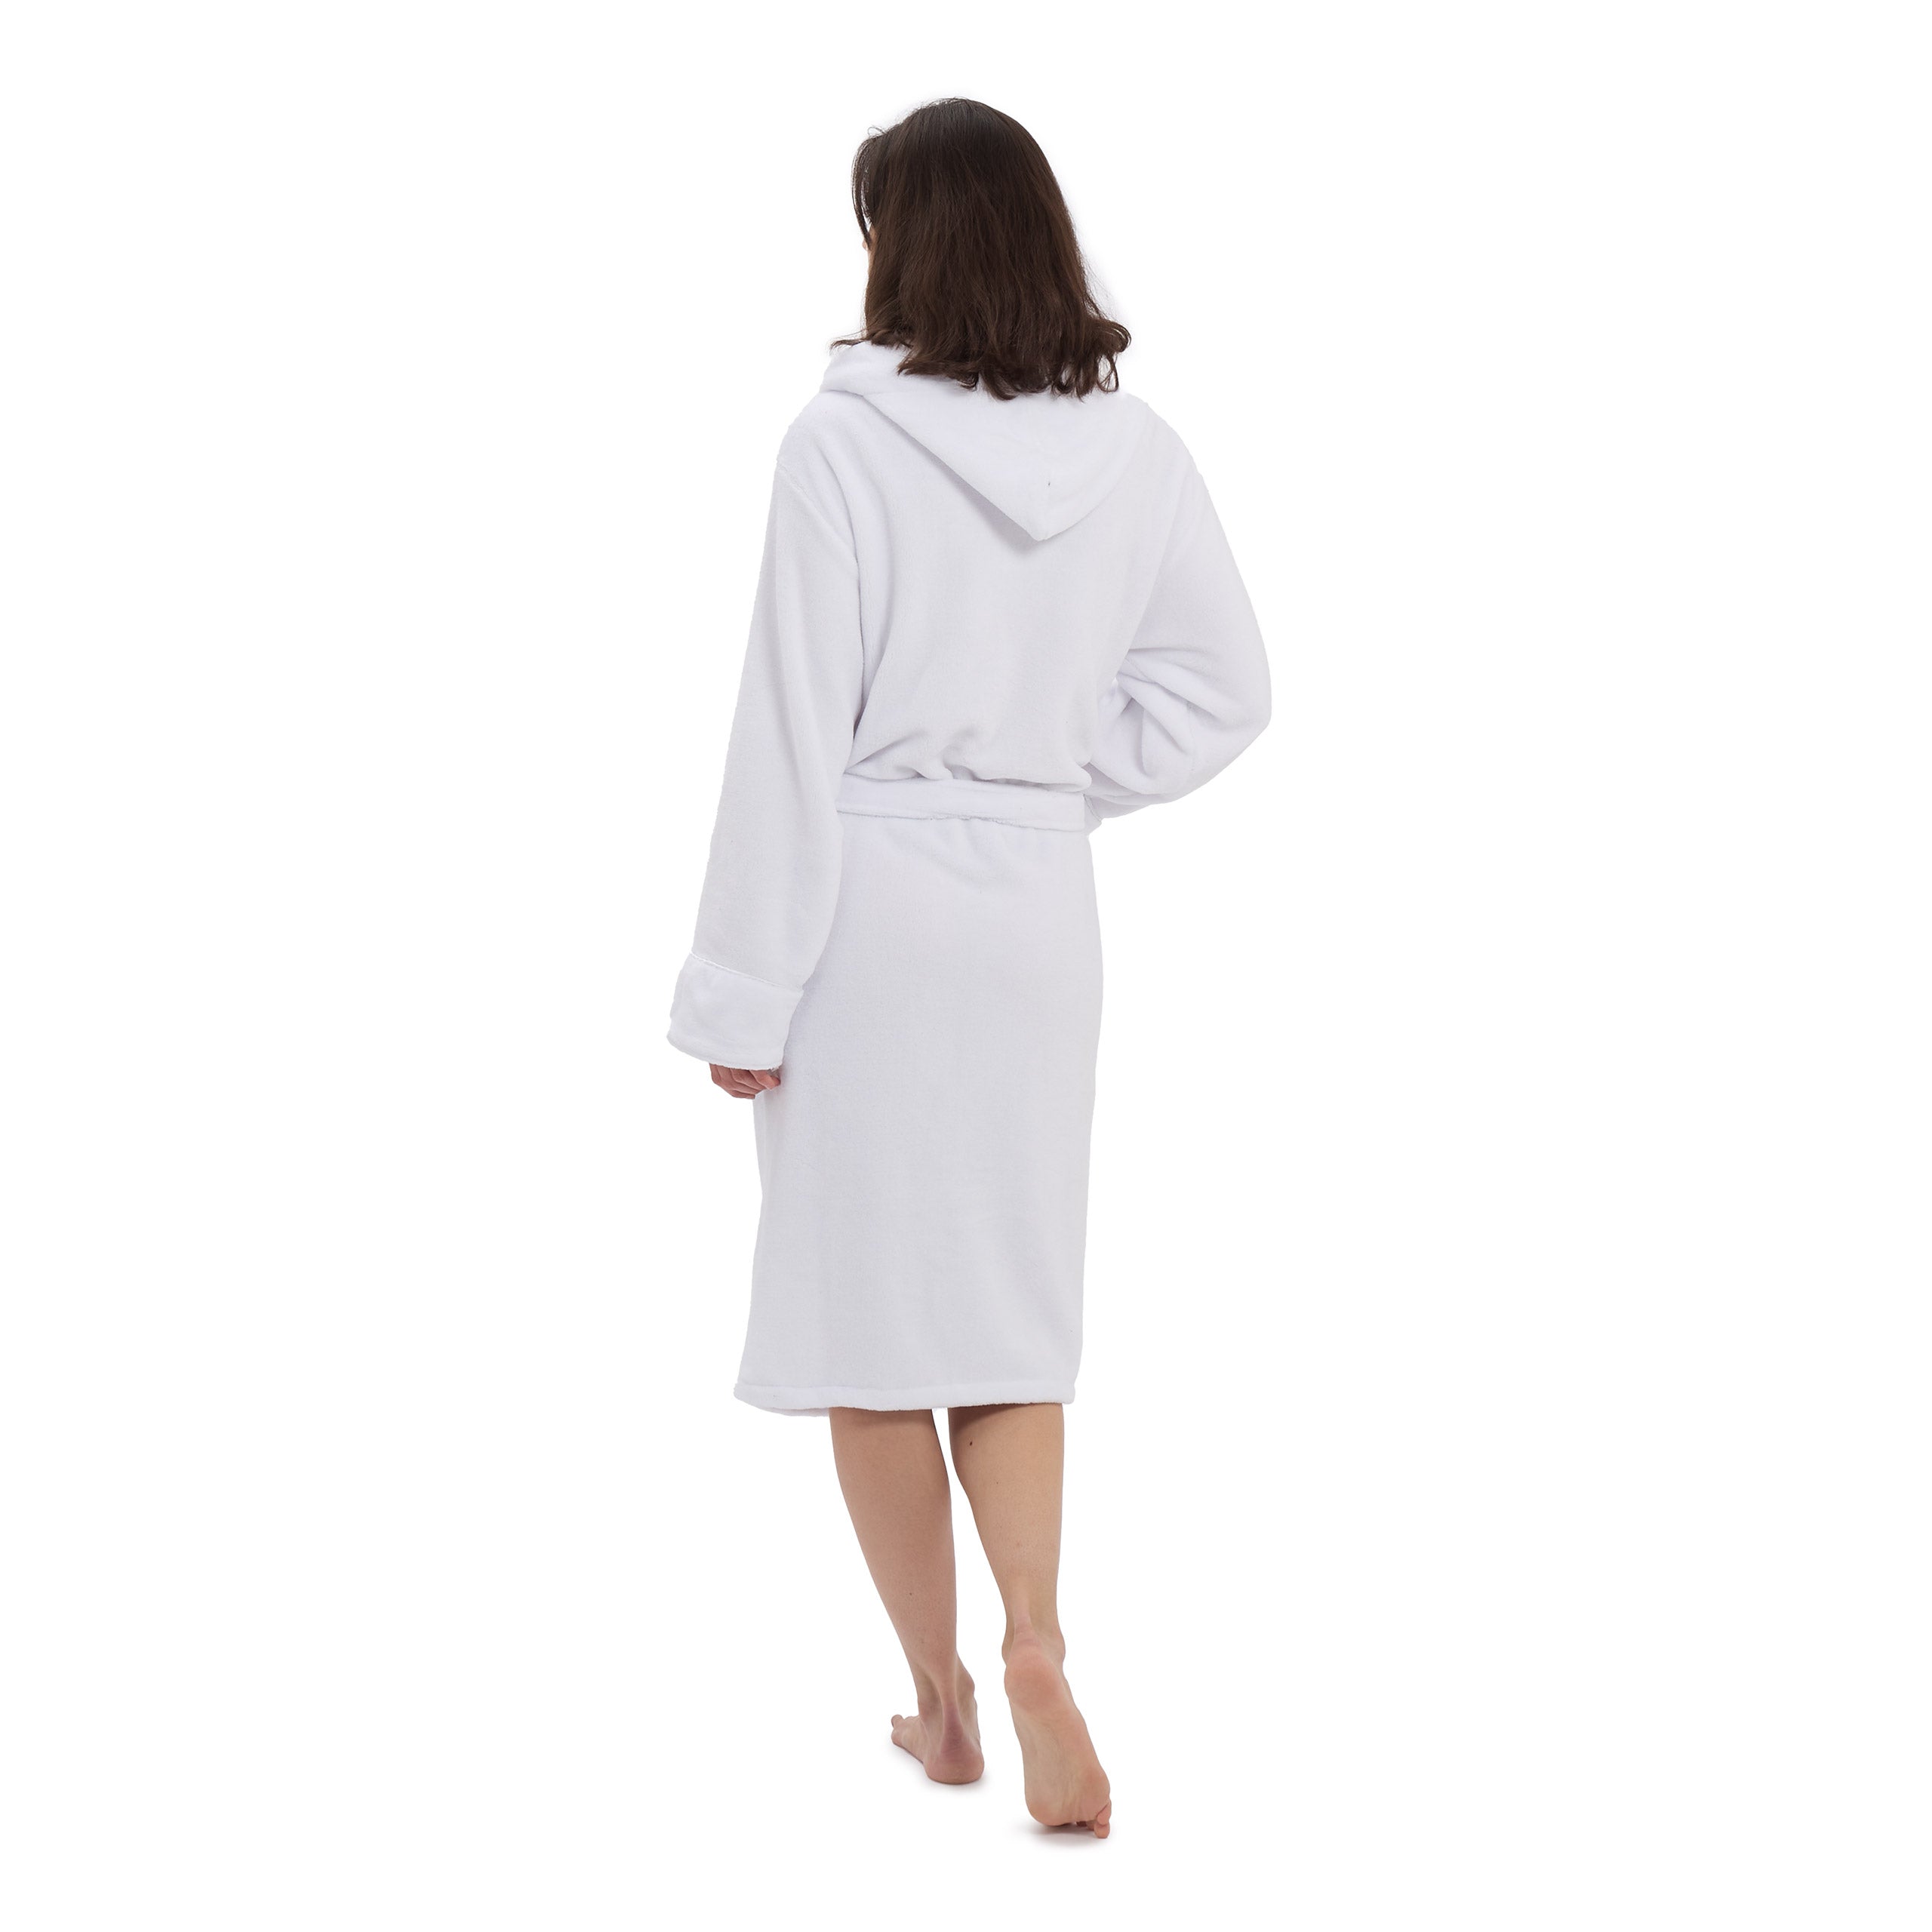 Luxury Mikrofaser Bademantel mit Kapuze für Damen und Herren - Weiß - Größe S